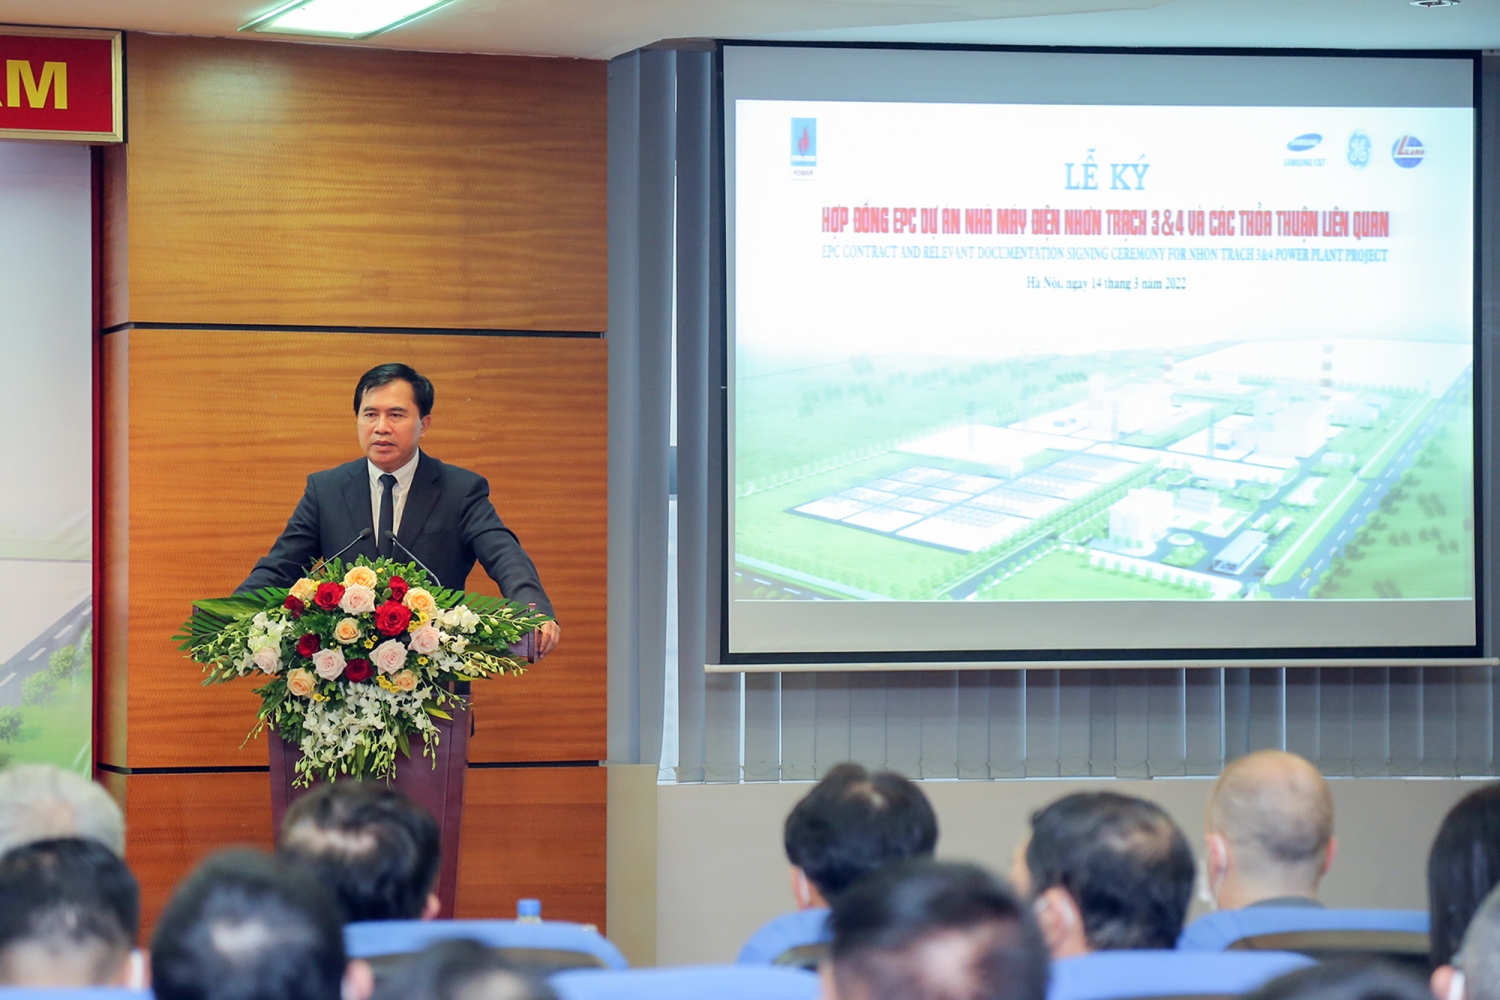 Ký kết hợp đồng EPC Dự án Nhà máy điện Nhơn Trạch 3&4